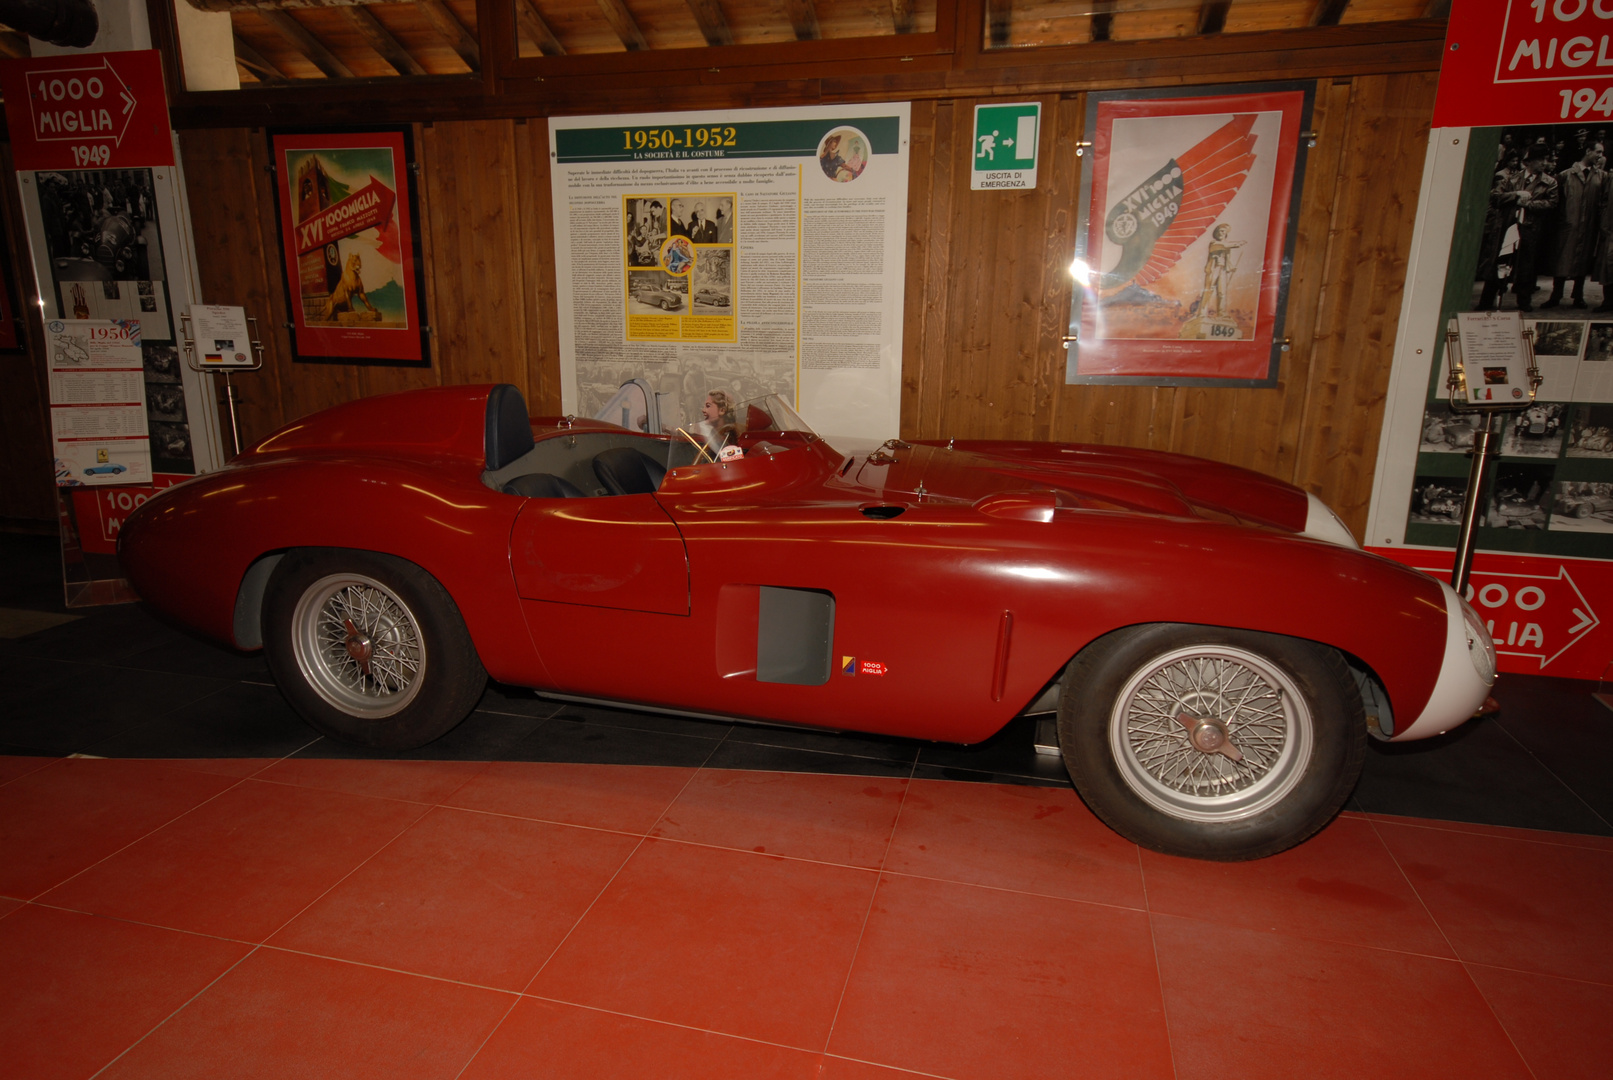 Ferrari 857 S